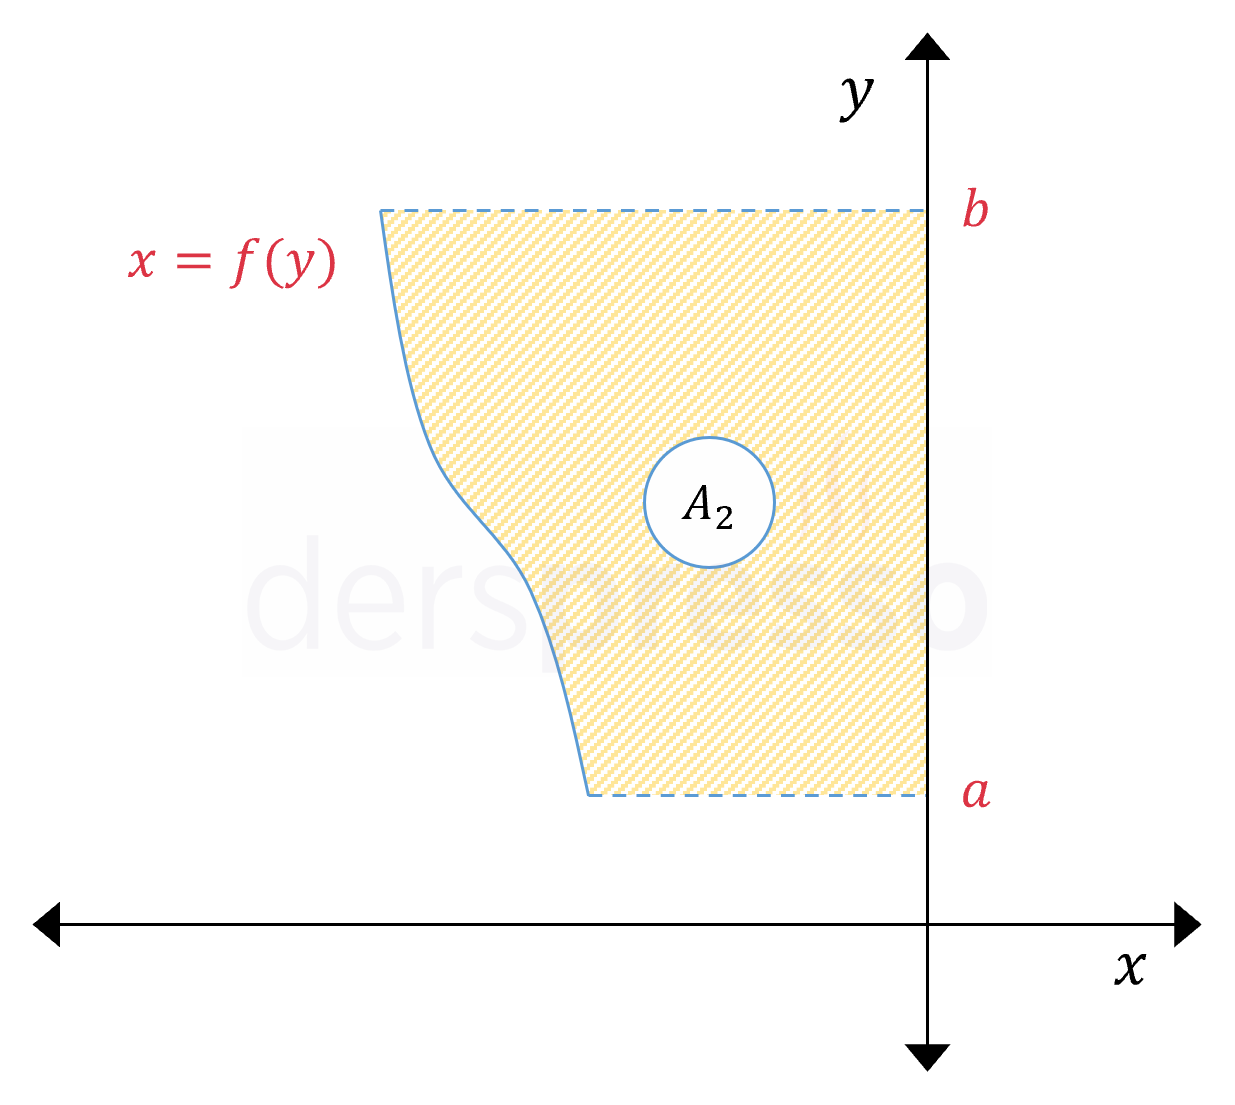 Eğri ile y-ekseni arasındaki alan (f(y) < 0)